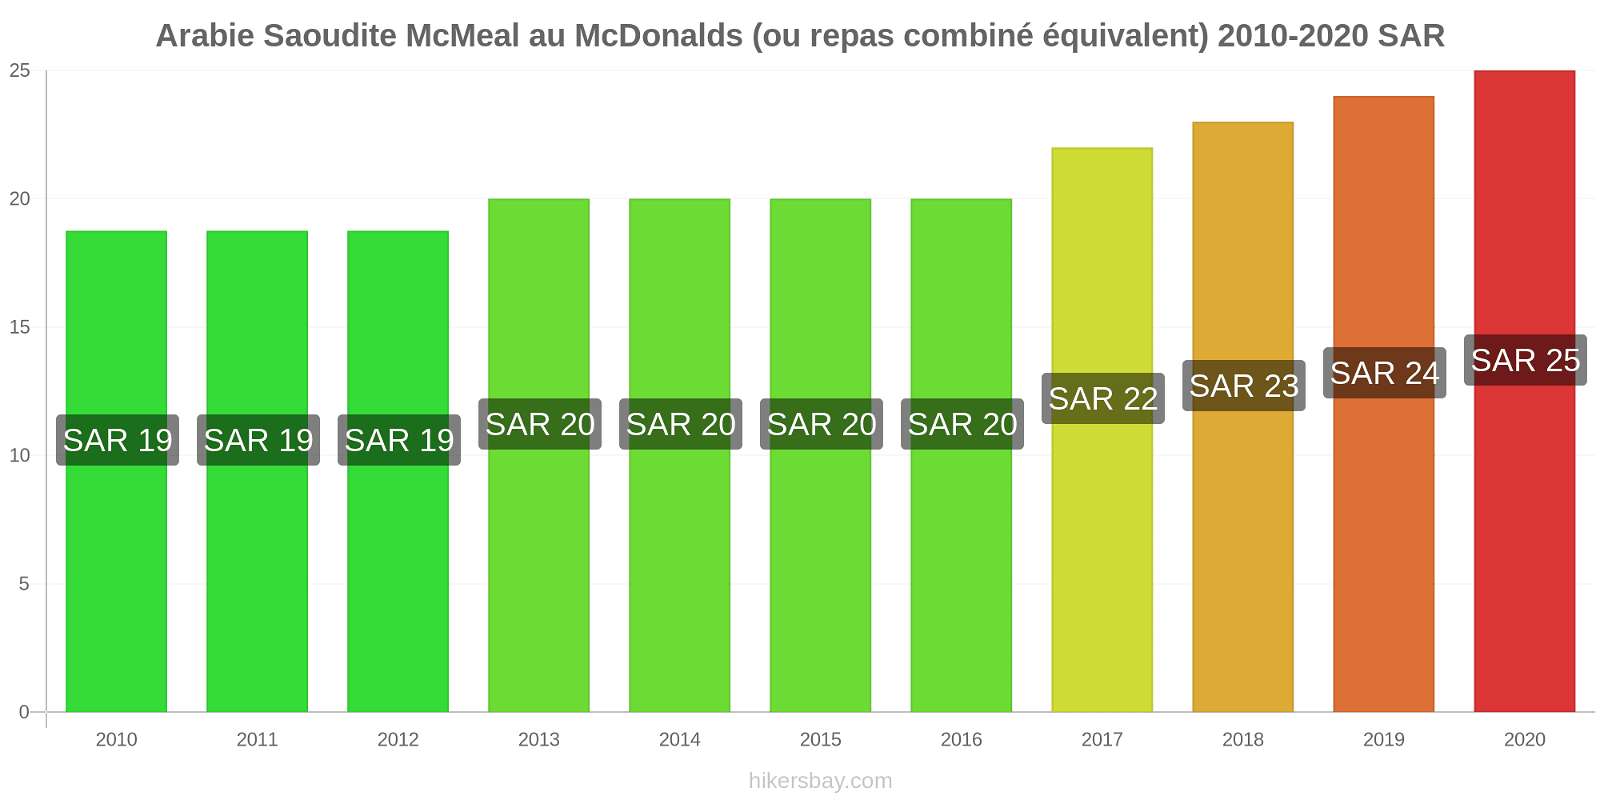 Arabie Saoudite changements de prix McMeal à McDonald ' s (ou Combo équivalent tourteau) hikersbay.com